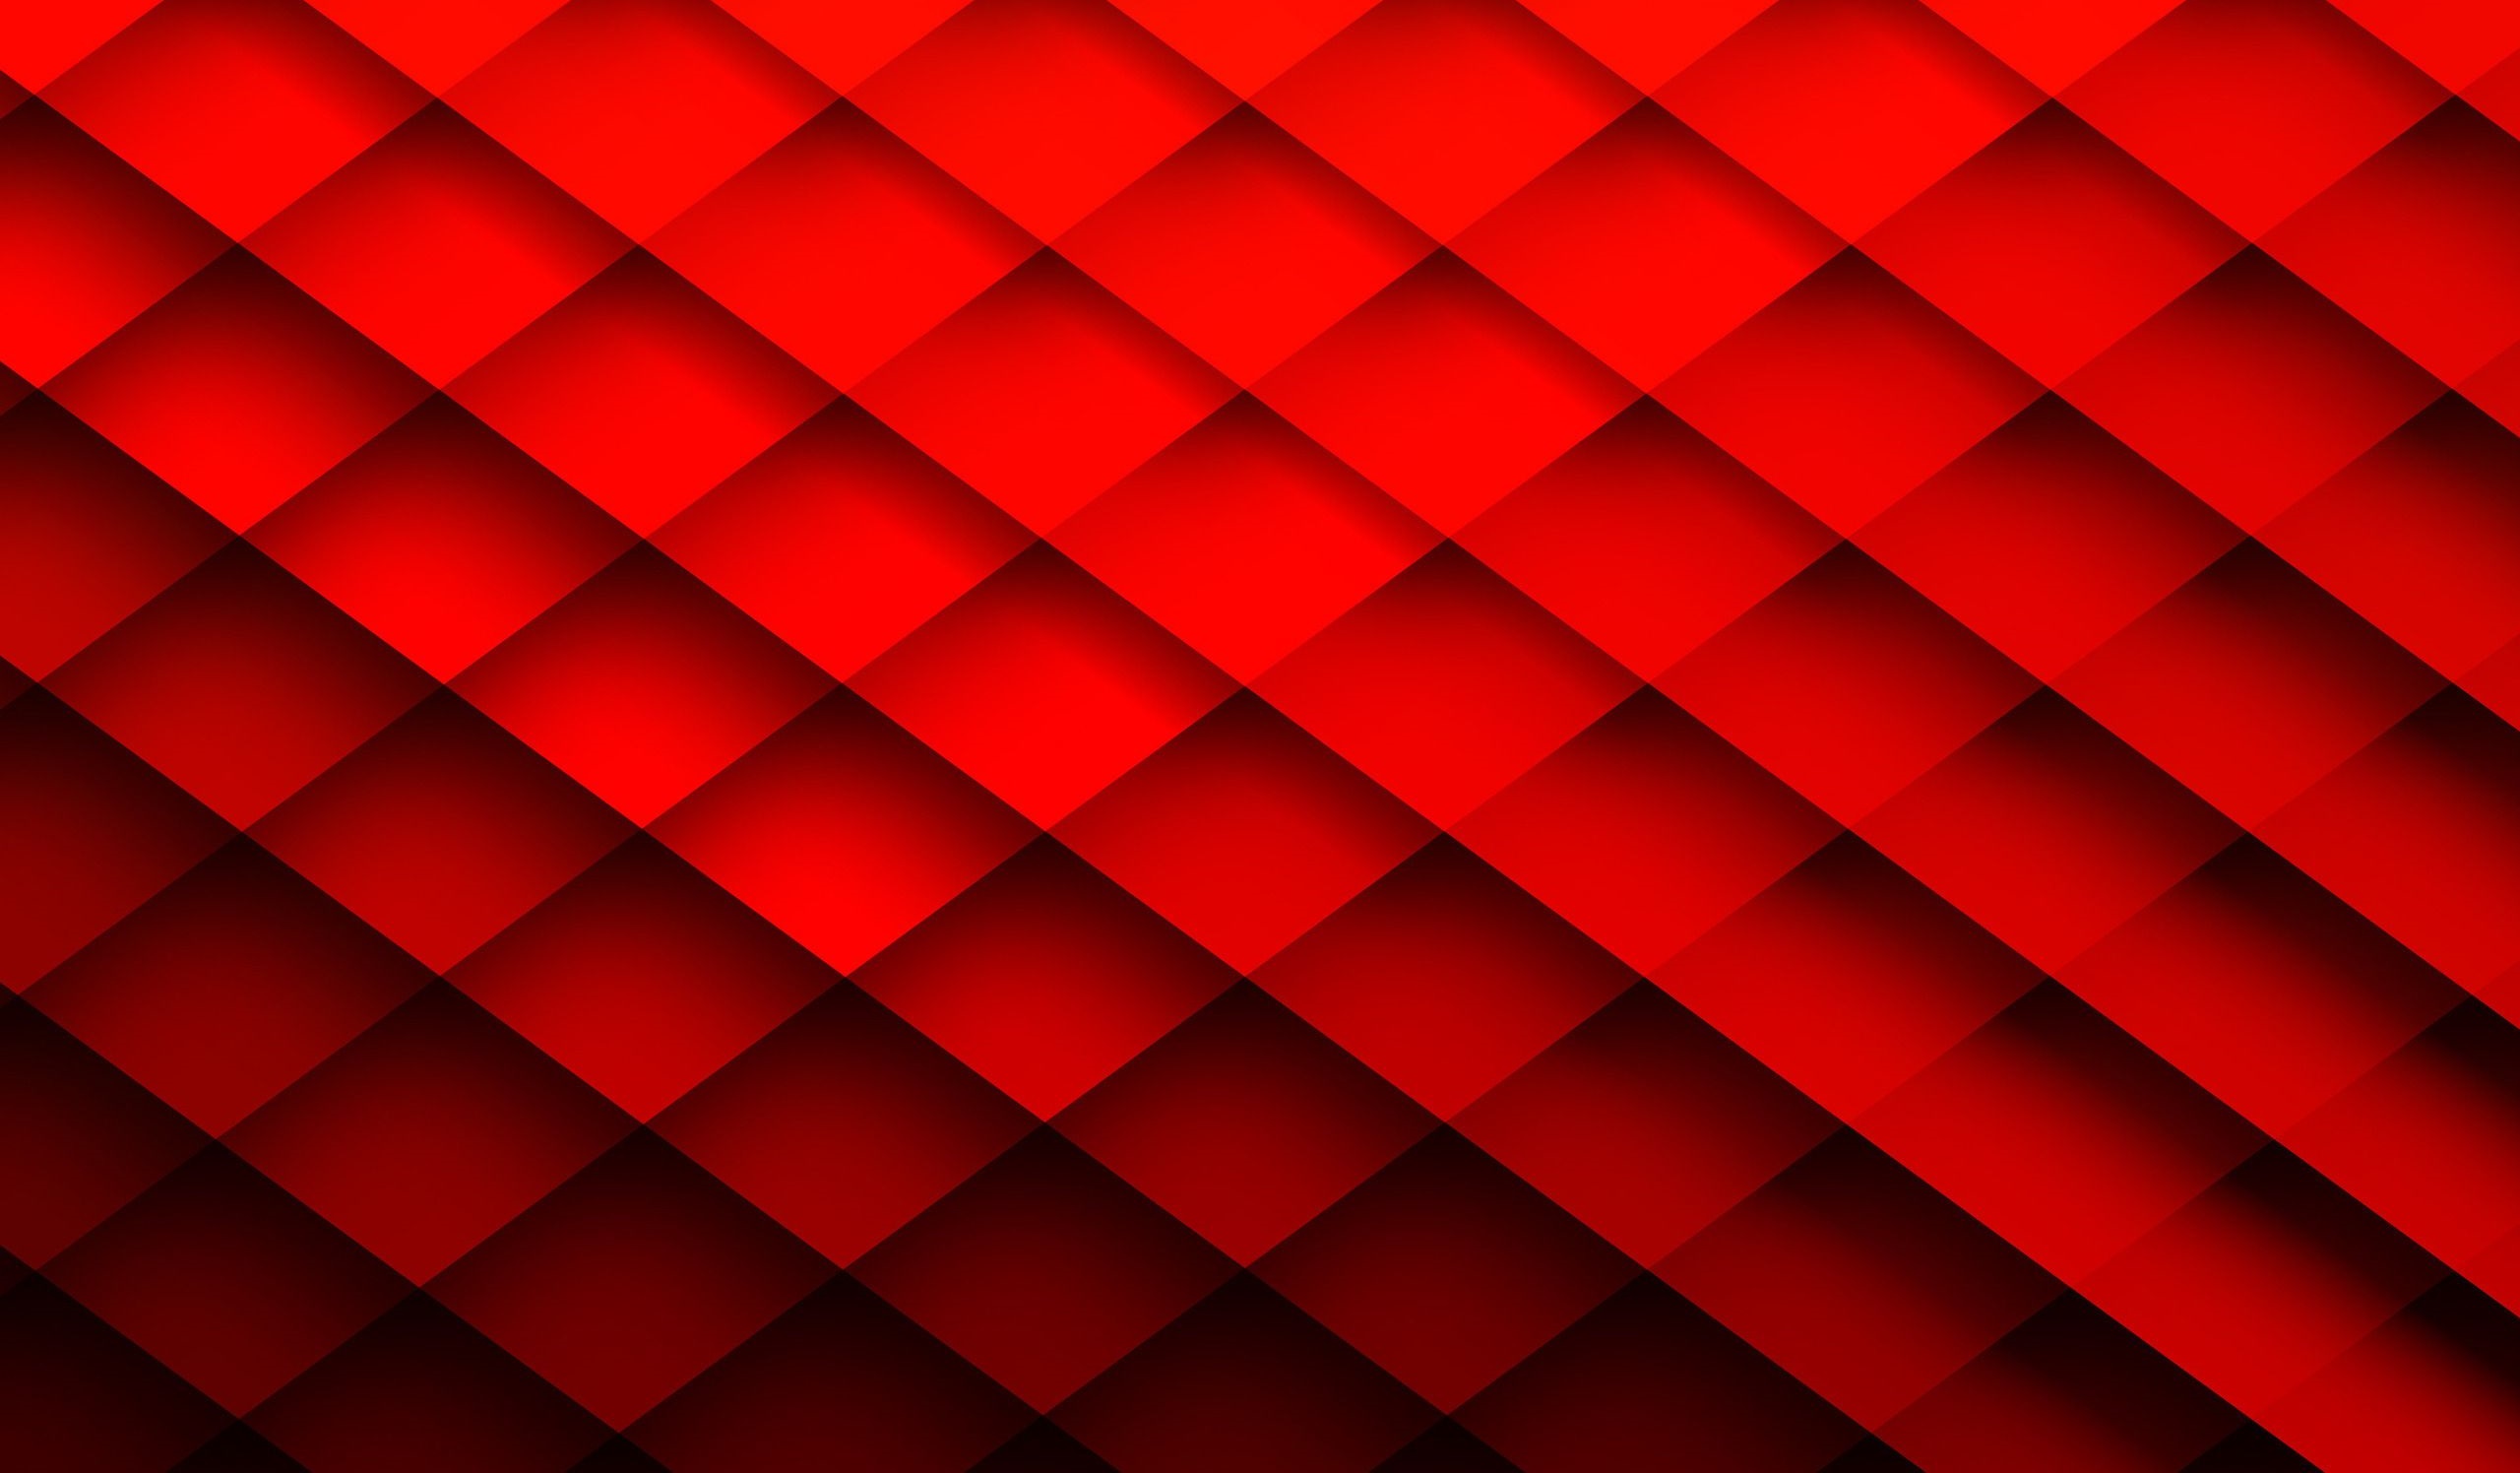 Hình nền đỏ: Mang đến sự nổi bật và năng động, hình nền đỏ sẽ làm nổi bật màn hình của bạn. Tông màu này không chỉ đặc biệt, mà còn đầy cảm xúc và sự tự tin. Hãy chiêm ngưỡng hình ảnh và cảm nhận sức mạnh của màu đỏ!